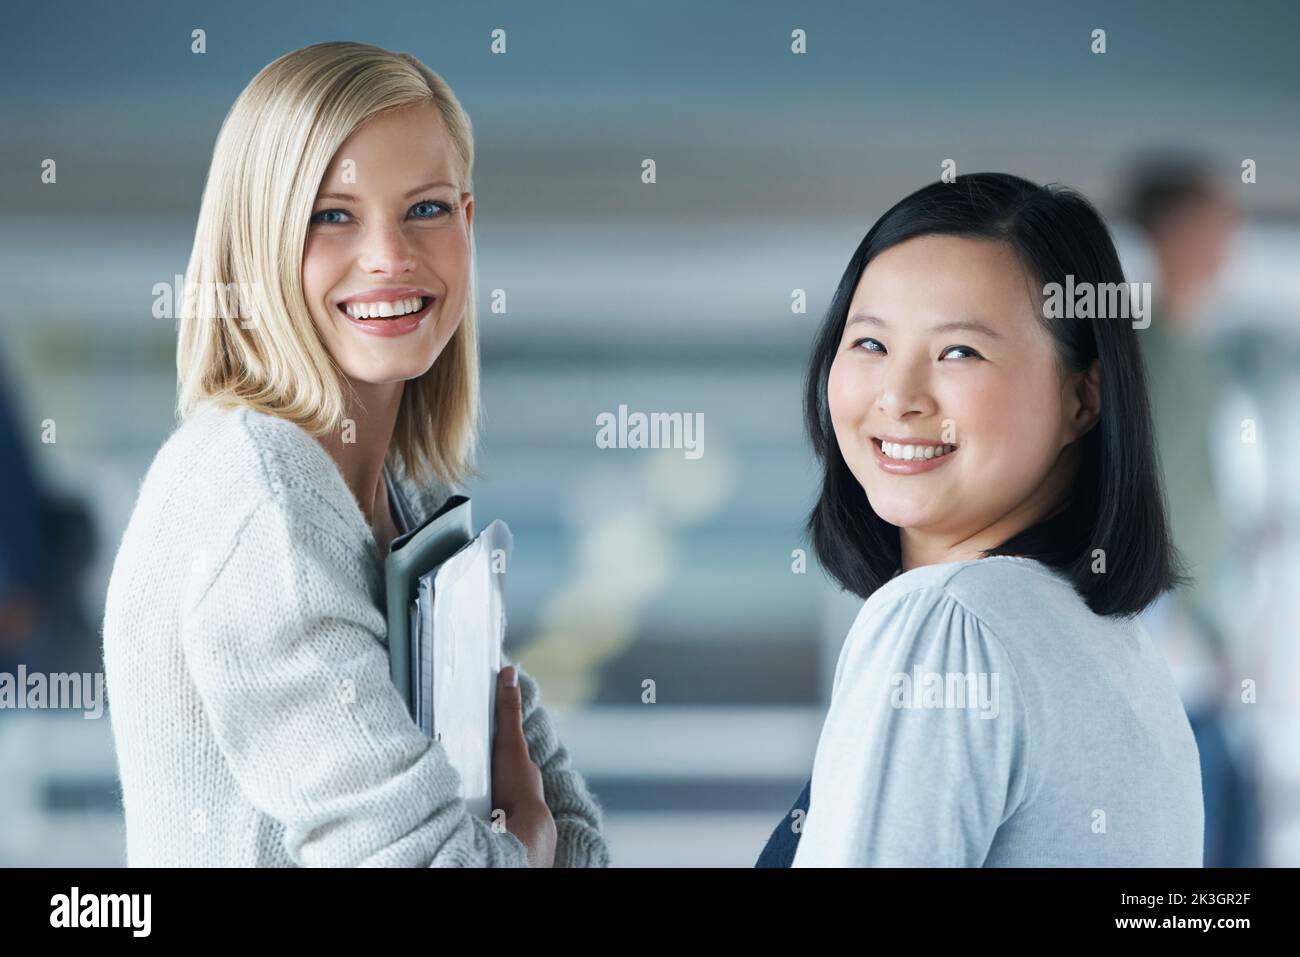 Titolo della classe. Due giovani studenti sorridono mentre guardano la fotocamera. Foto Stock